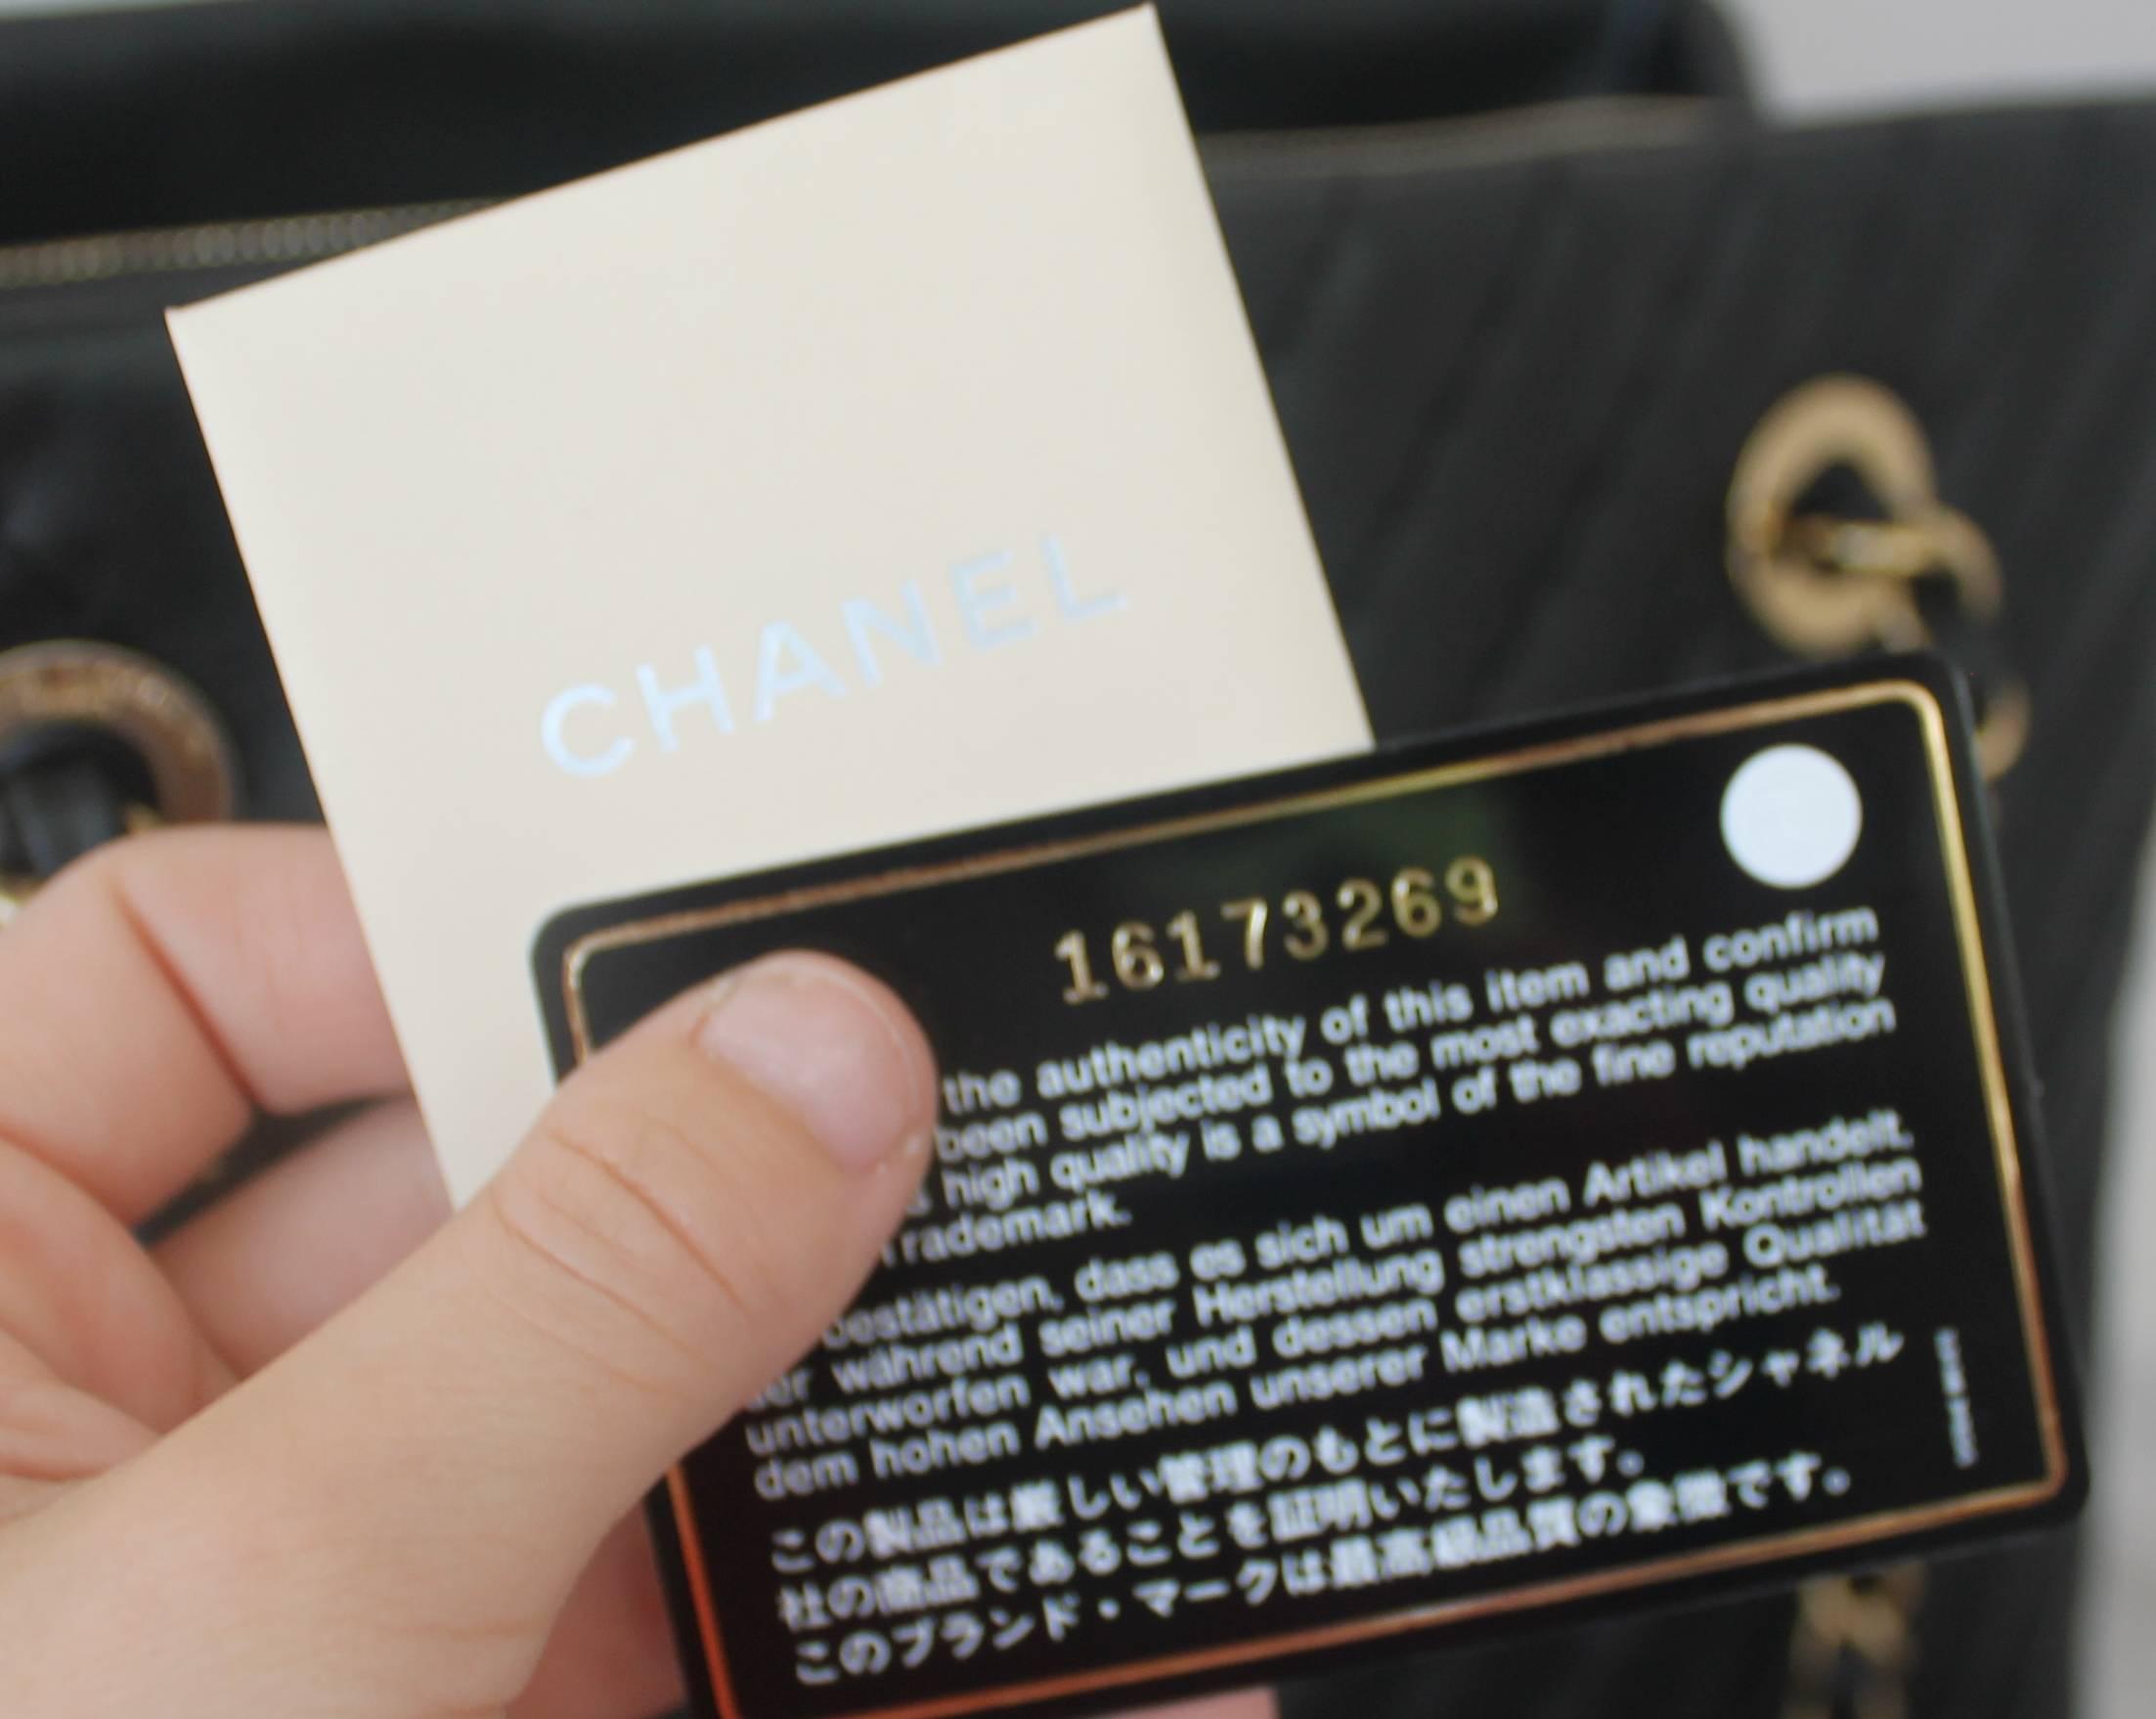 Gray Chanel Black Leather Chevron Shopper Tote - circa 2013-2014 - NWT